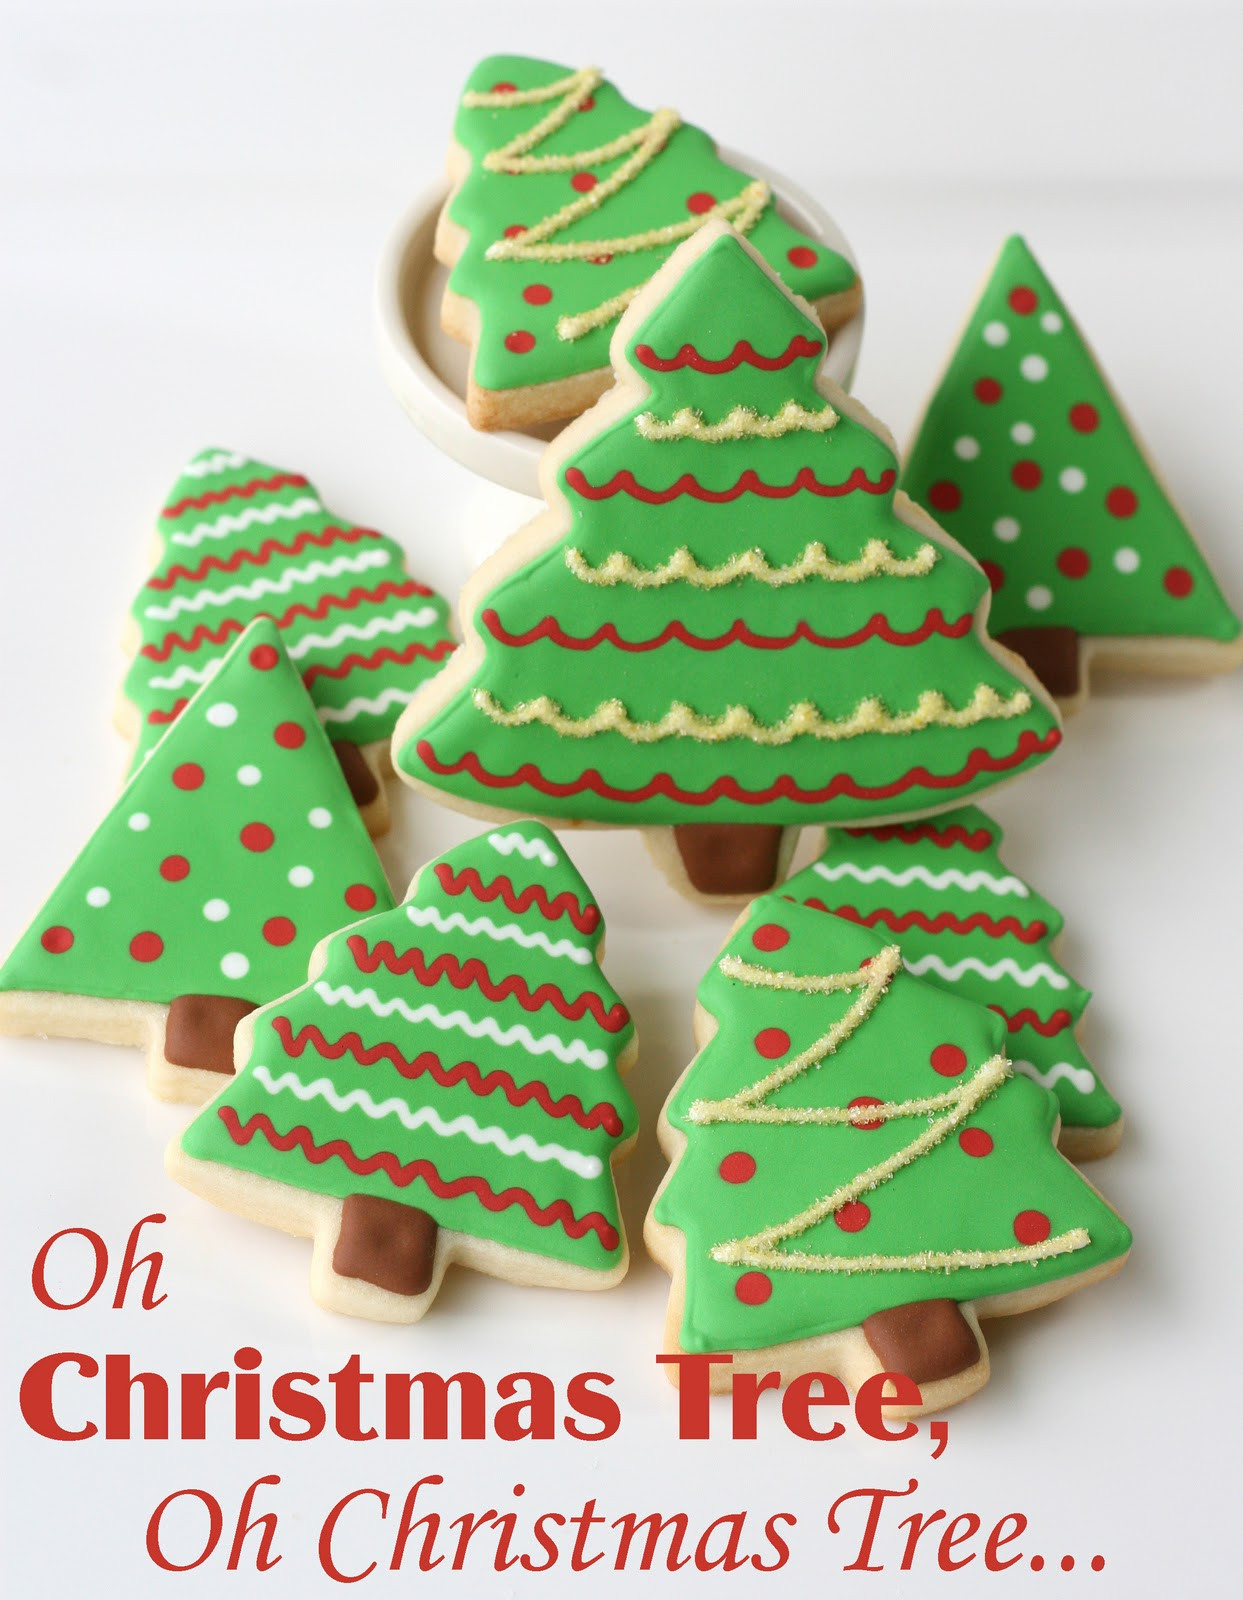 Christmas Cookies Packaging
 Christmas Cookies and Cute Packaging – Glorious Treats